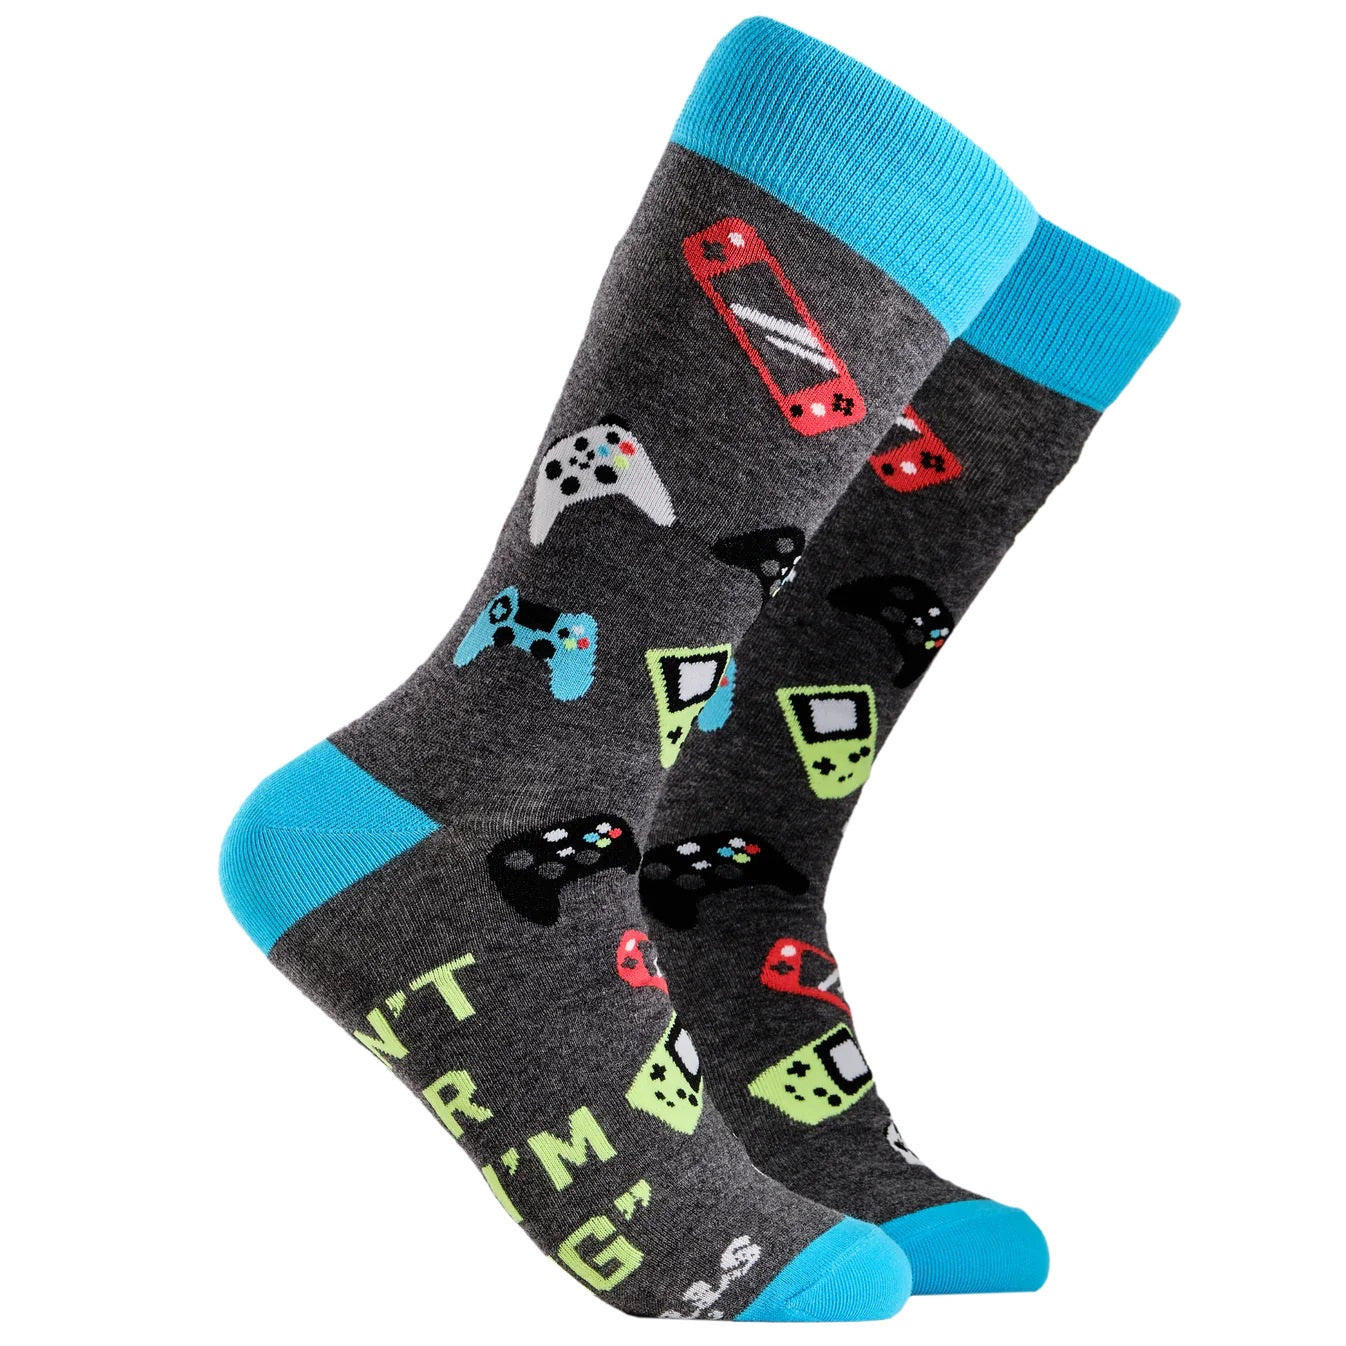 Gamer Socks - Large